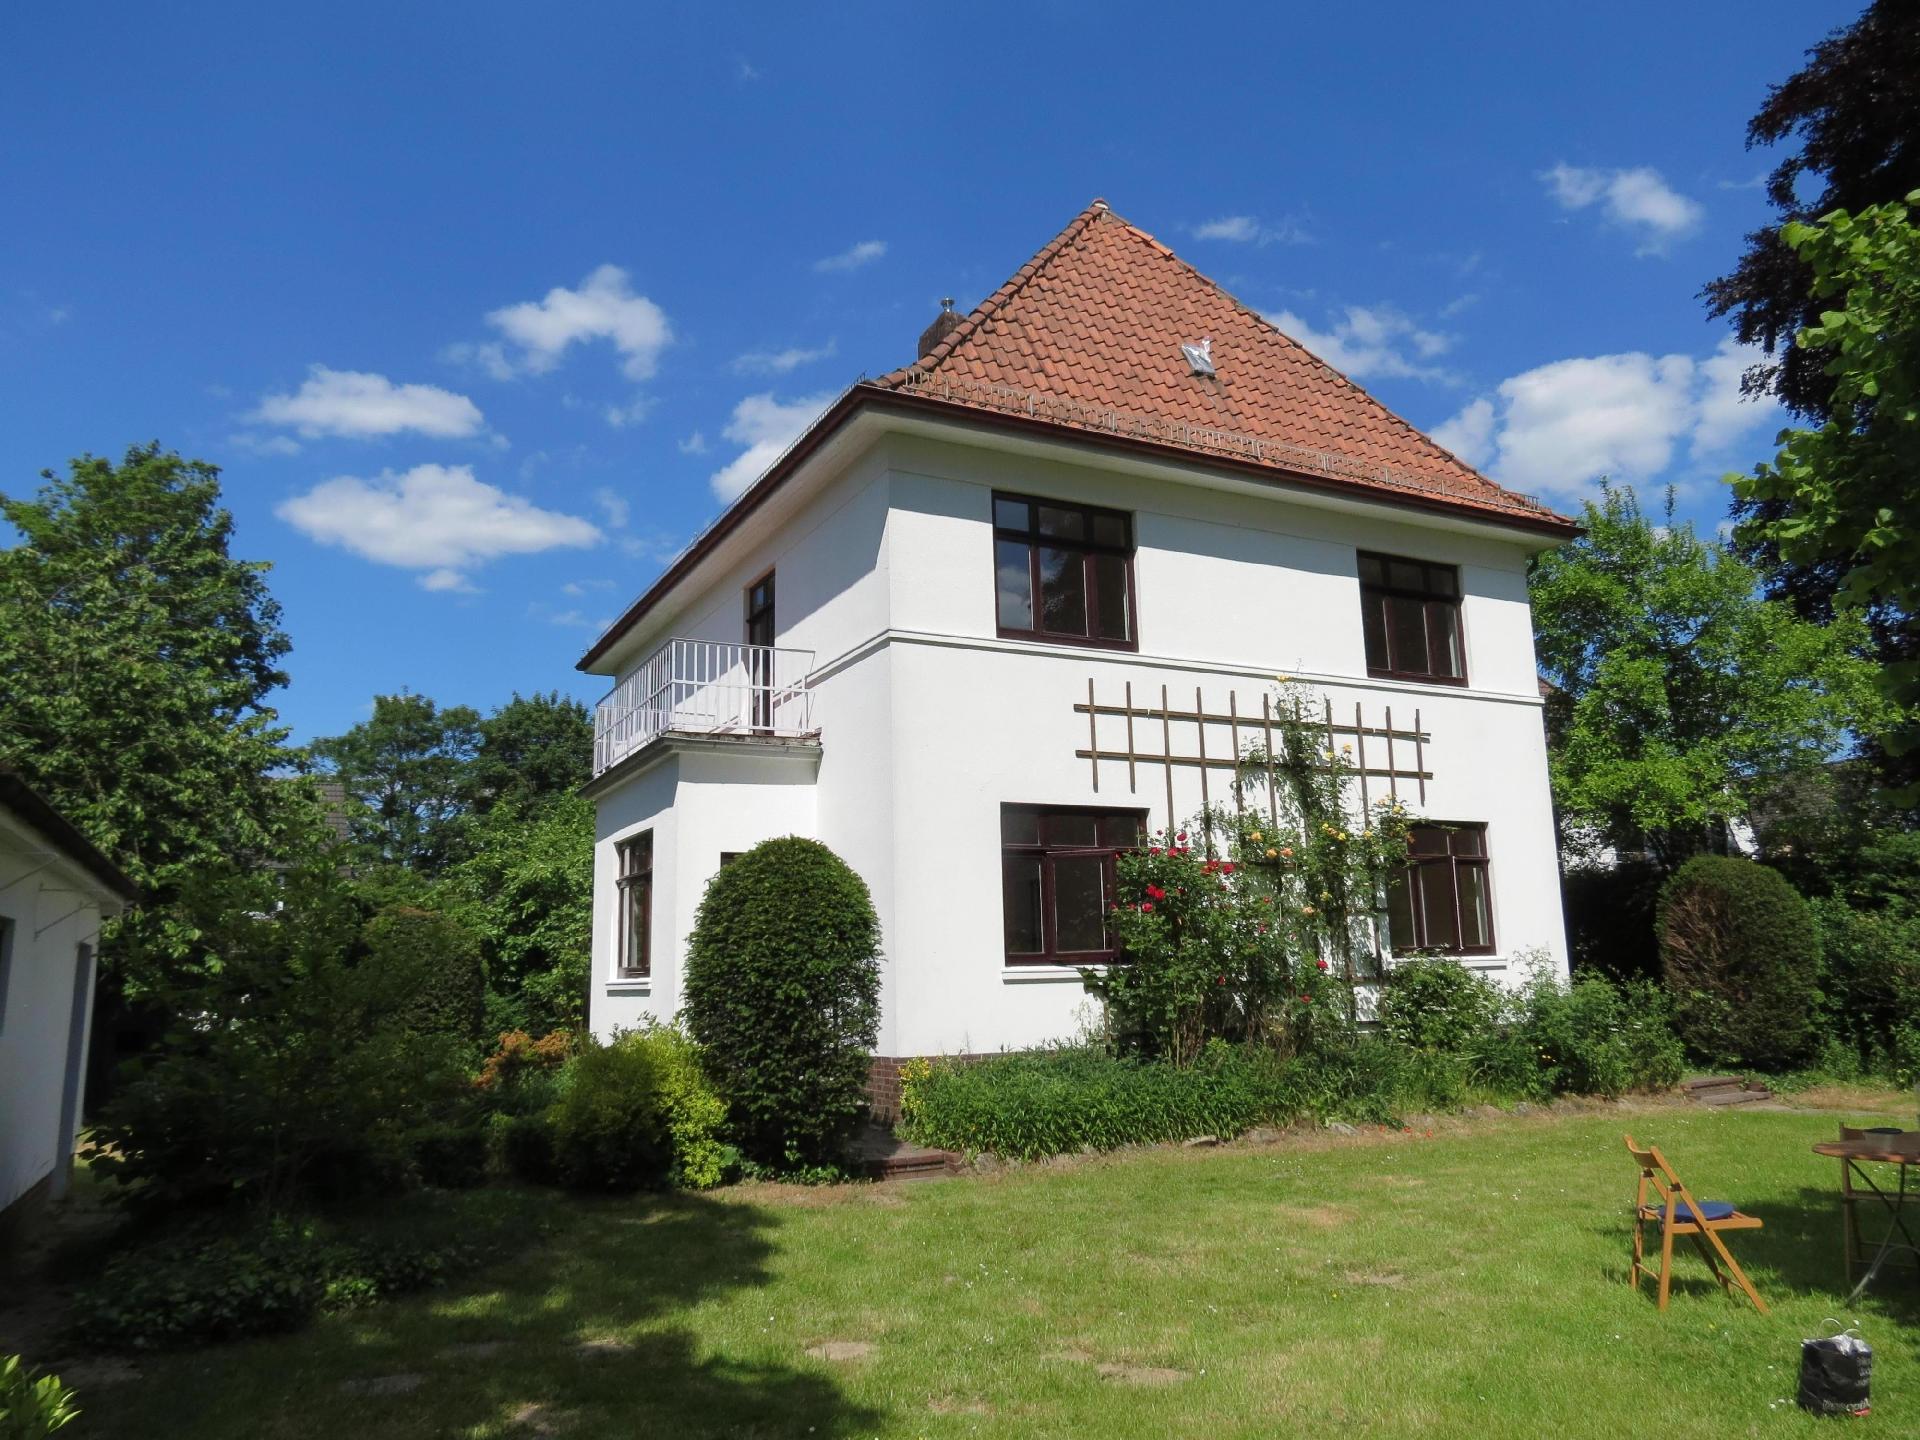 Haus der Wohnstile , Ferienhaus in Bremen-Lesum    Bremen